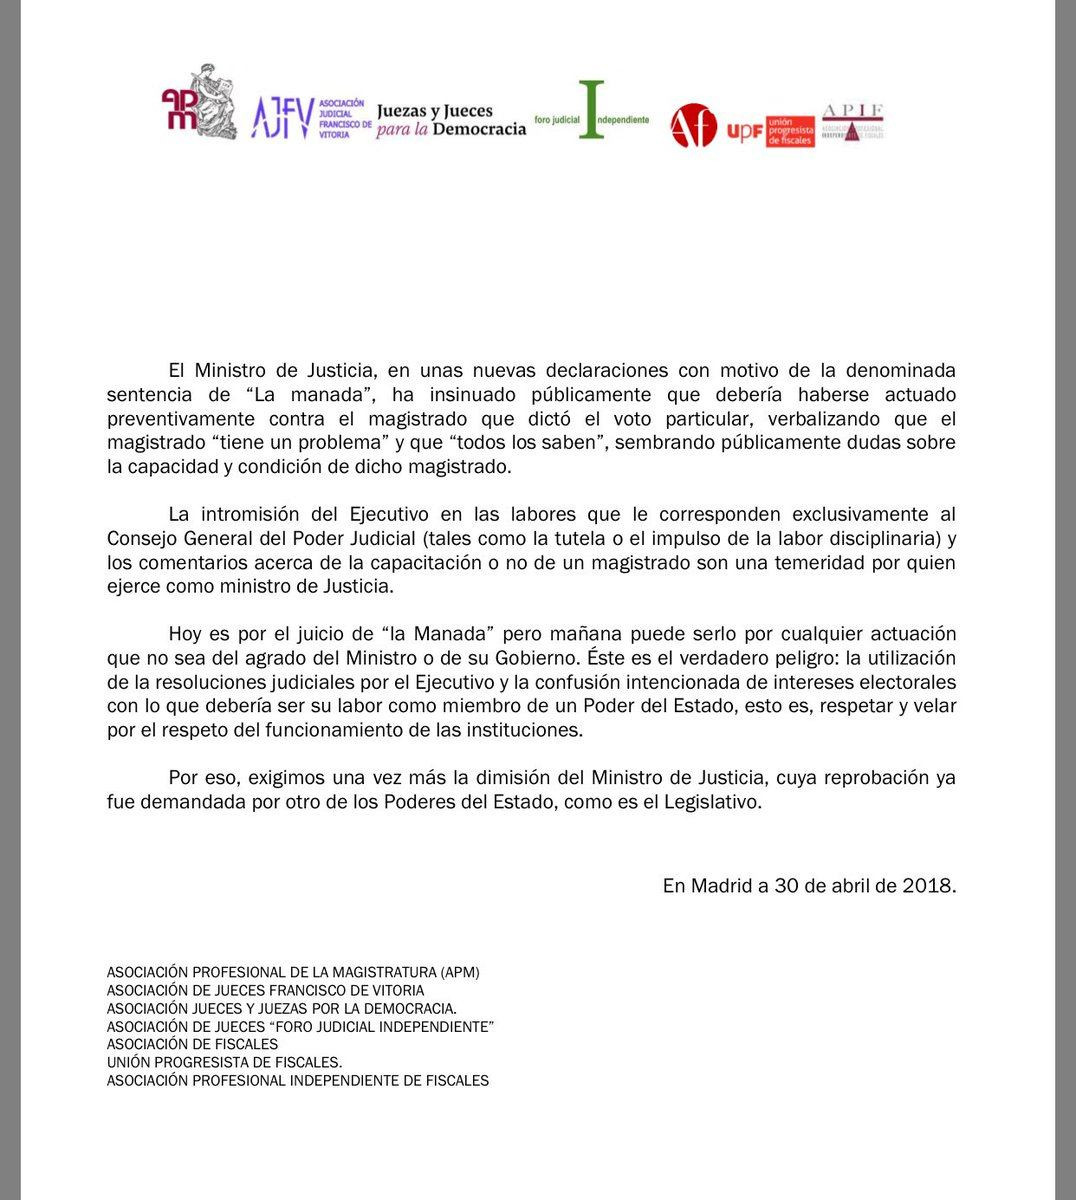 El comunicado emitido por jueces y fiscales de España contra el ministro de Justicia